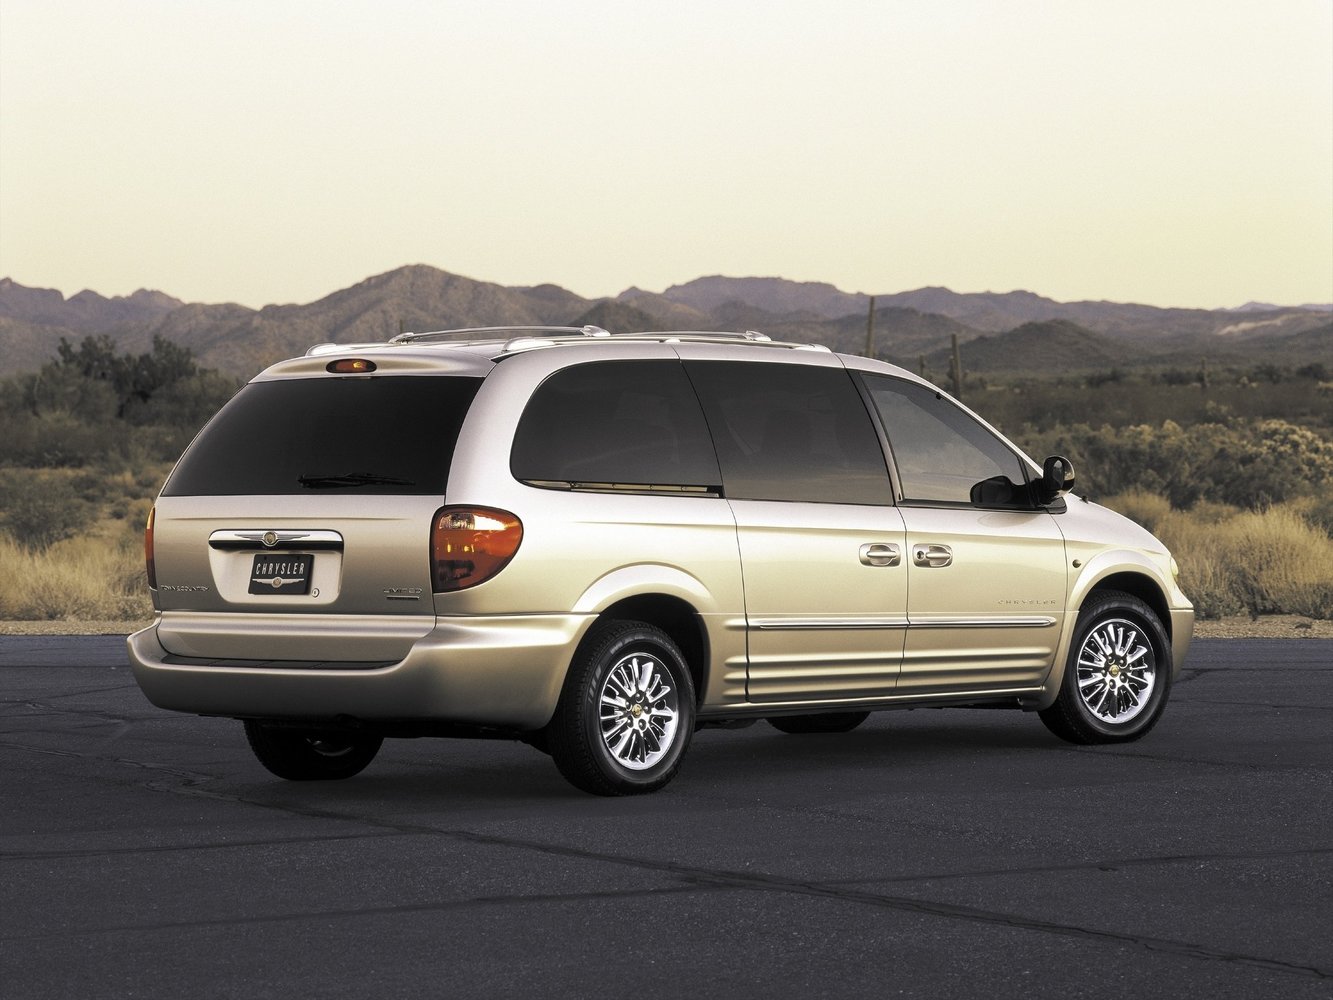 минивэн Chrysler Town & Country 2000 - 2004г выпуска модификация 3.3 AT (182 л.с.)